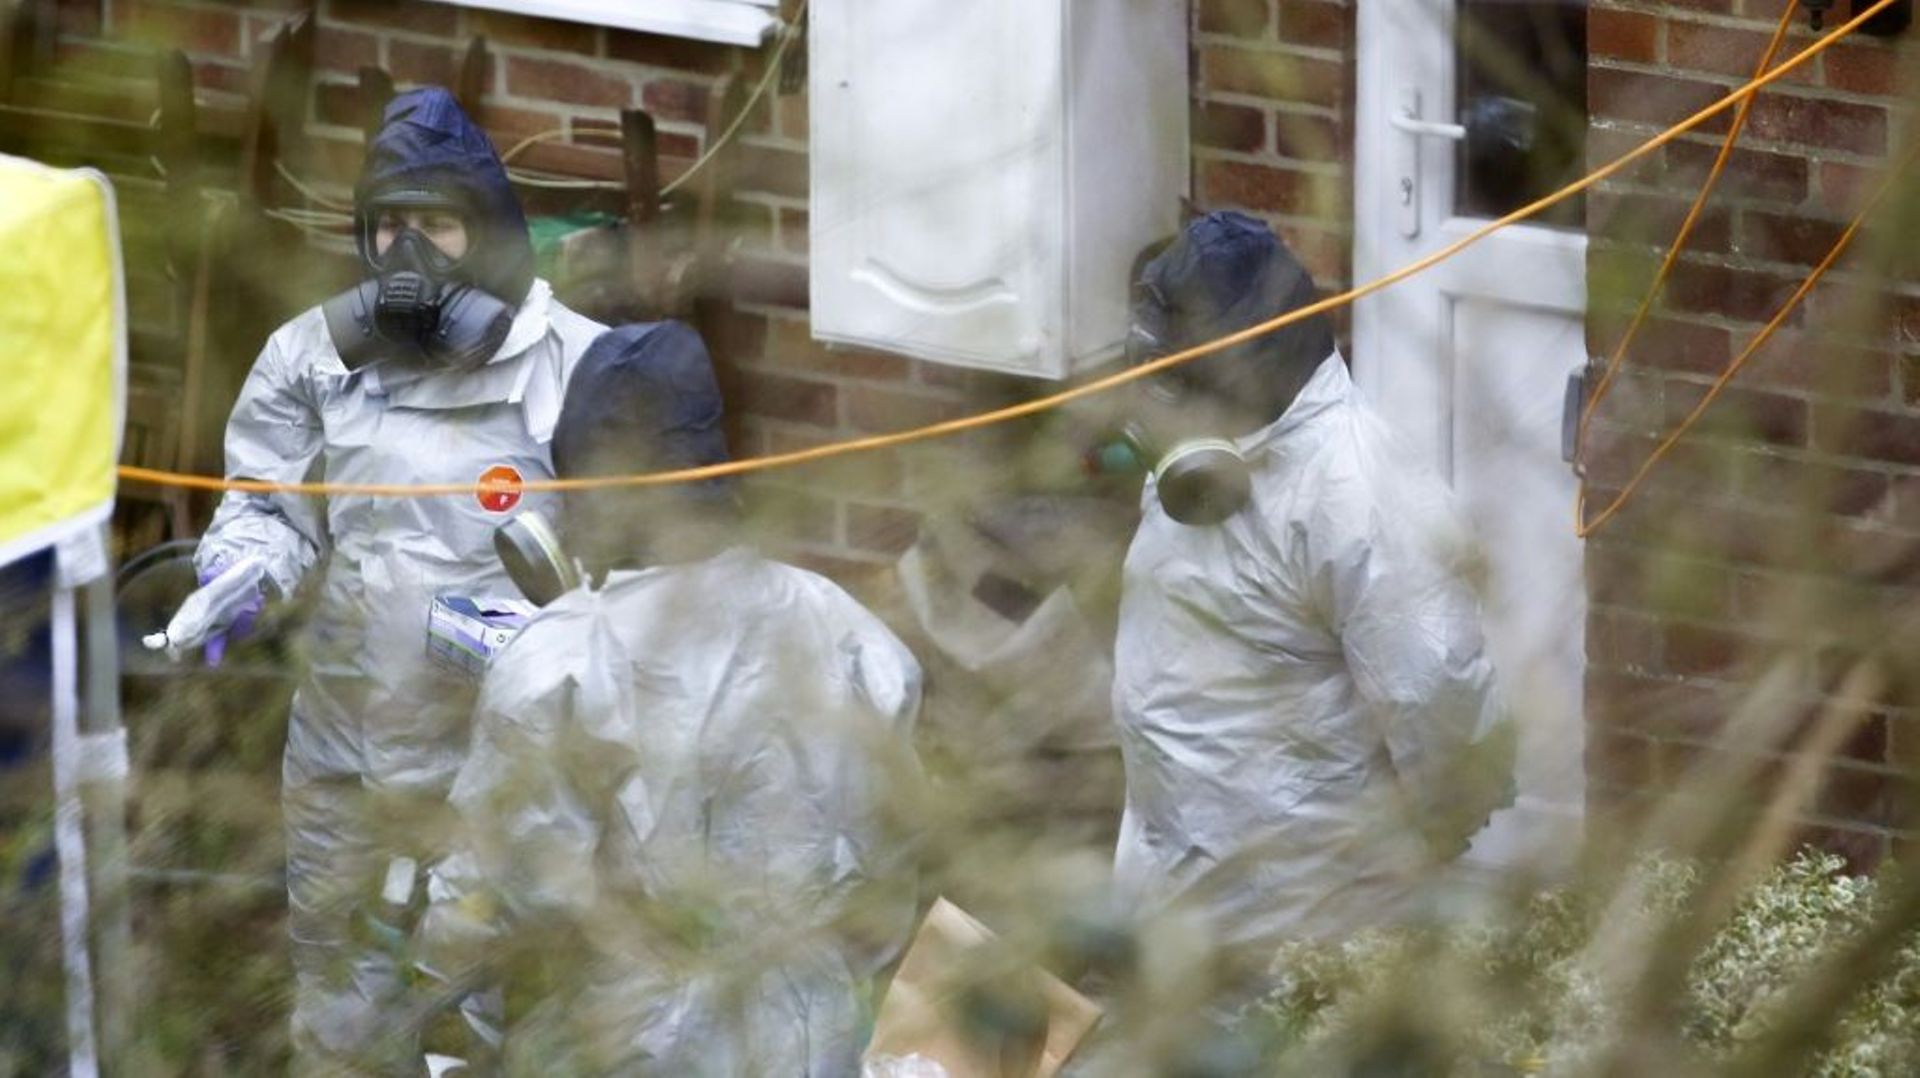 Des enquêteurs britanniques devant la maison de Sergueï Skripal à Salisbury, en Angleterre, le 26 mars 2018